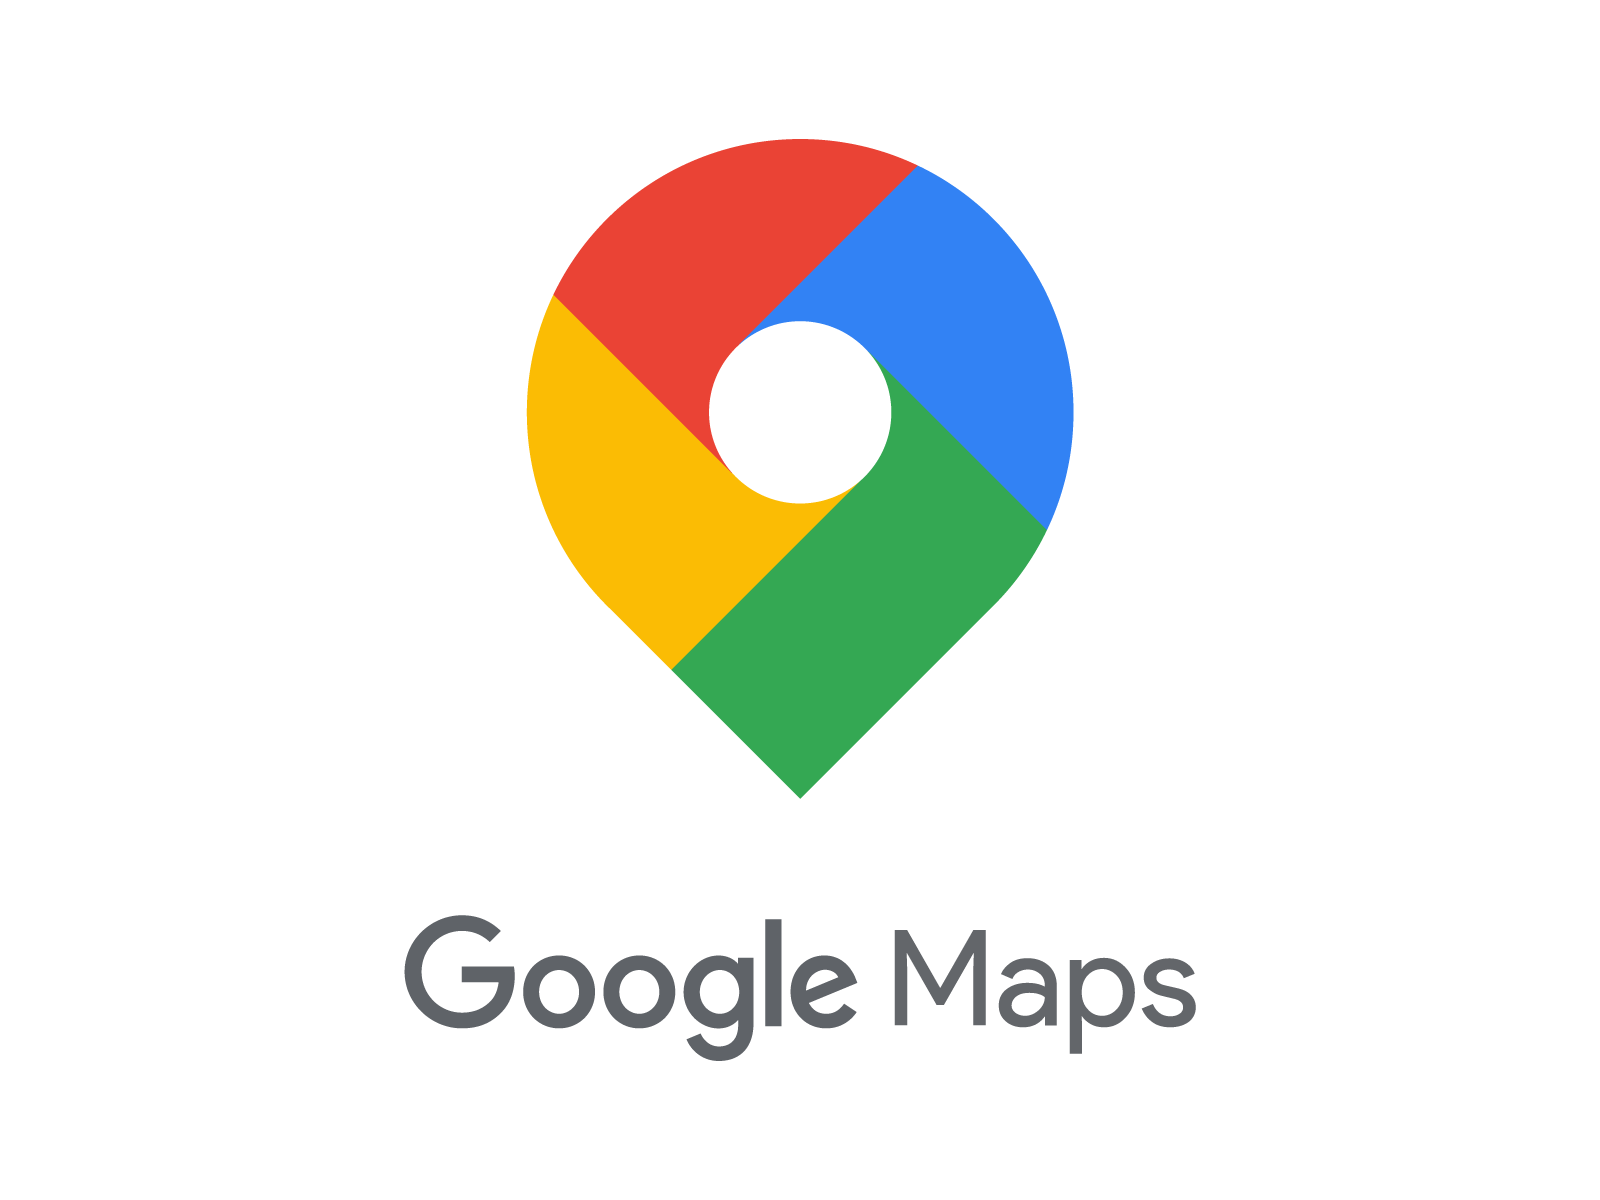 دانلود گوگل مپ جدید Google Maps 10.72.3 نقشه و مسیریاب اندروید | ایران دانلود